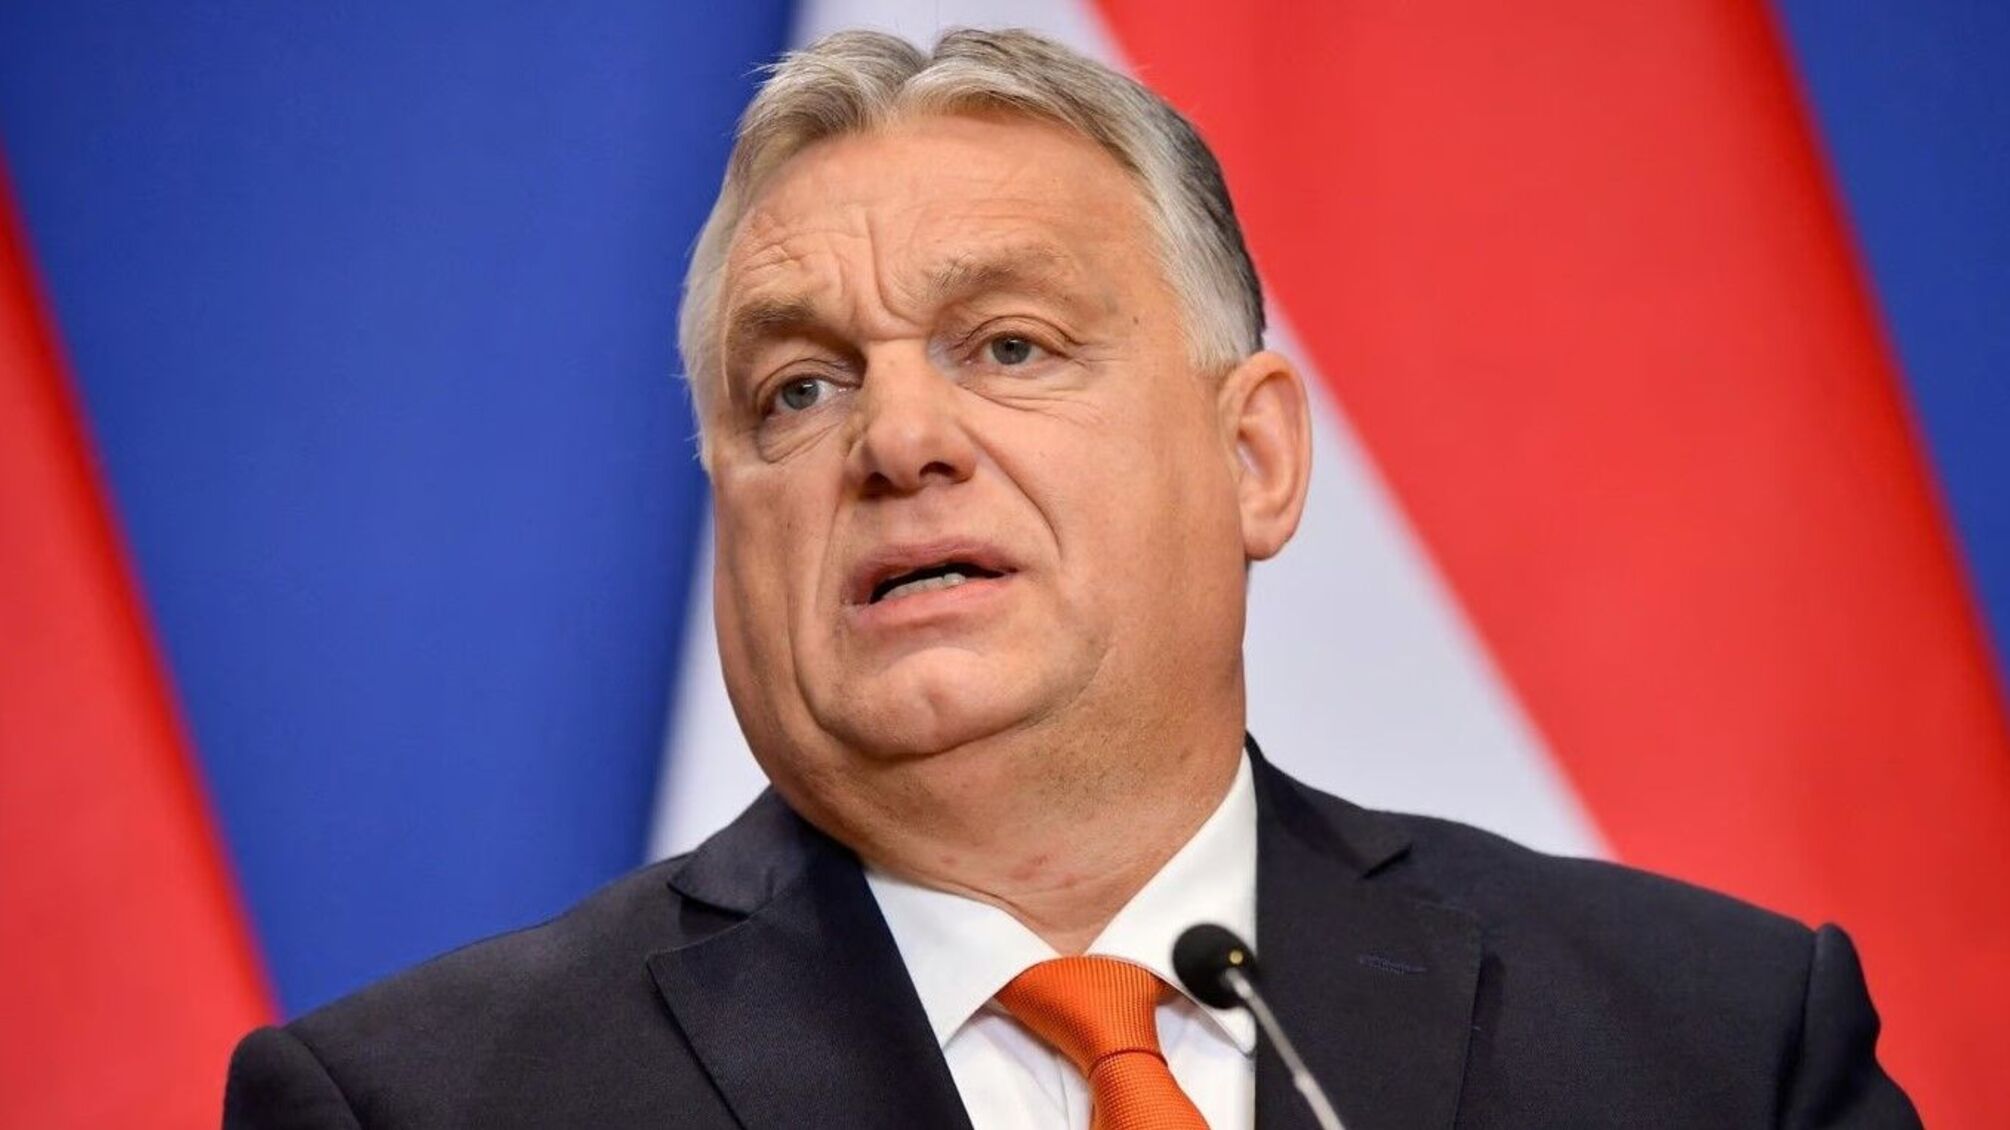 Прем'єр-міністр Угорщини Віктор Орбан